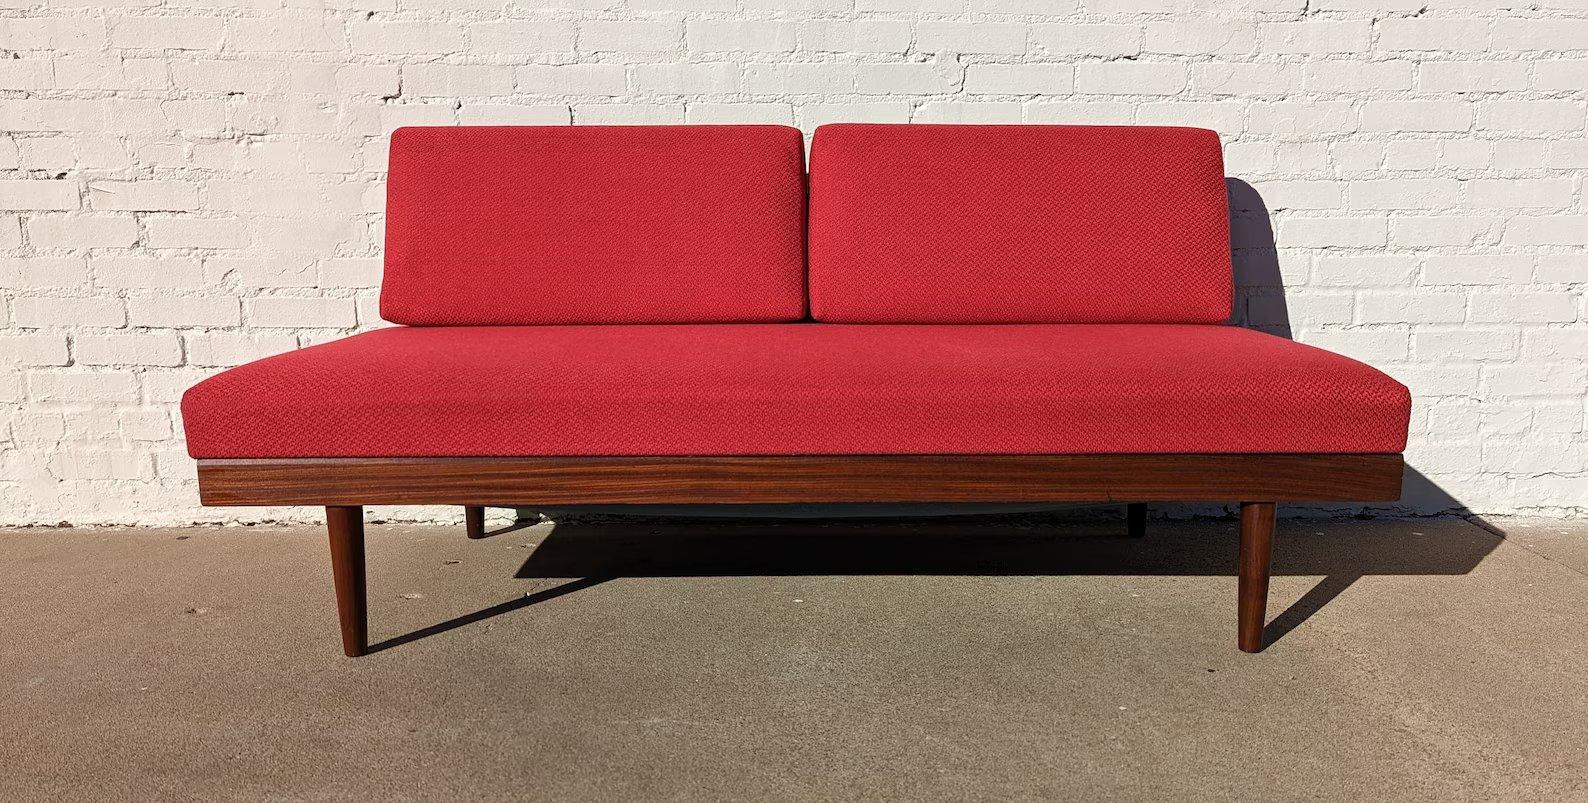 Skandinavisches rotes Sleeper-Sessel aus der Mitte des Jahrhunderts

Überdurchschnittlicher Vintage-Zustand und strukturell gesund. Hat einige erwartete leichte Oberfläche Verschleiß und Kratzer auf Teakholz Rahmen. Die Polsterung ist neu. Hat ein